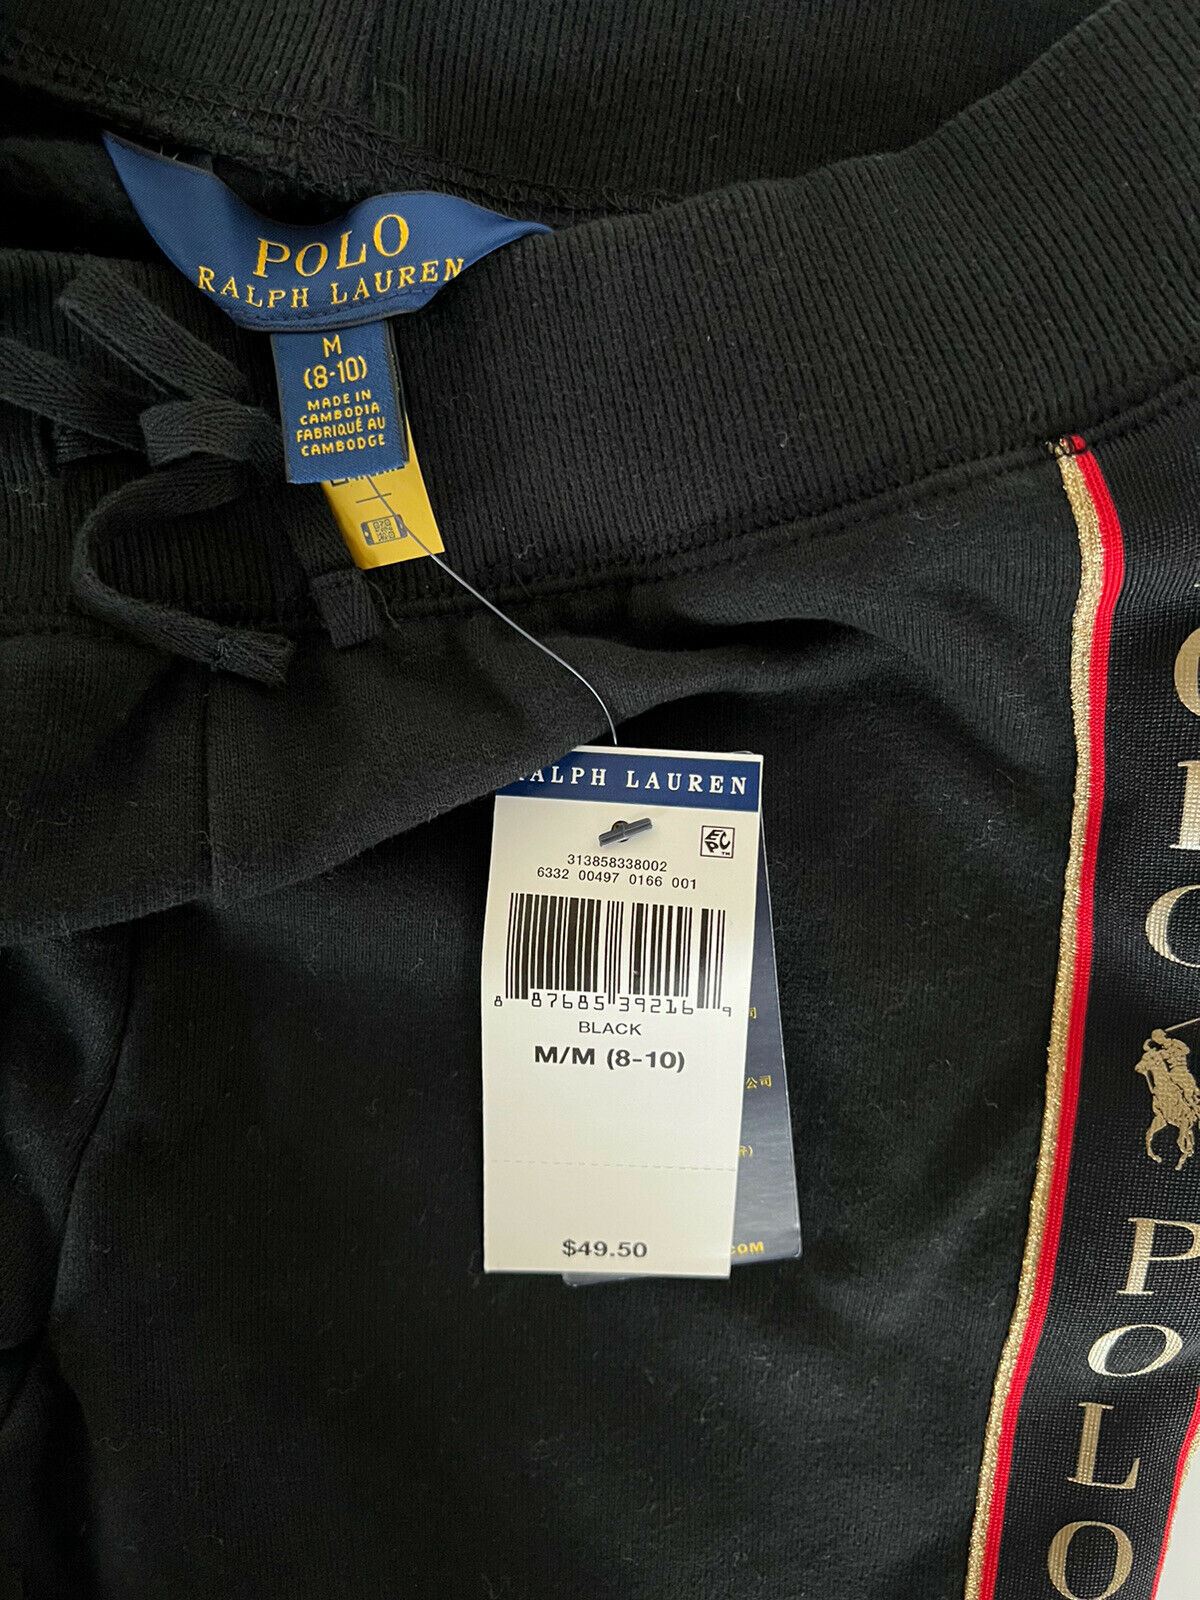 Neu mit Etikett: Schwarze Hose für Mädchen von Polo Ralph Lauren, M (8–10)